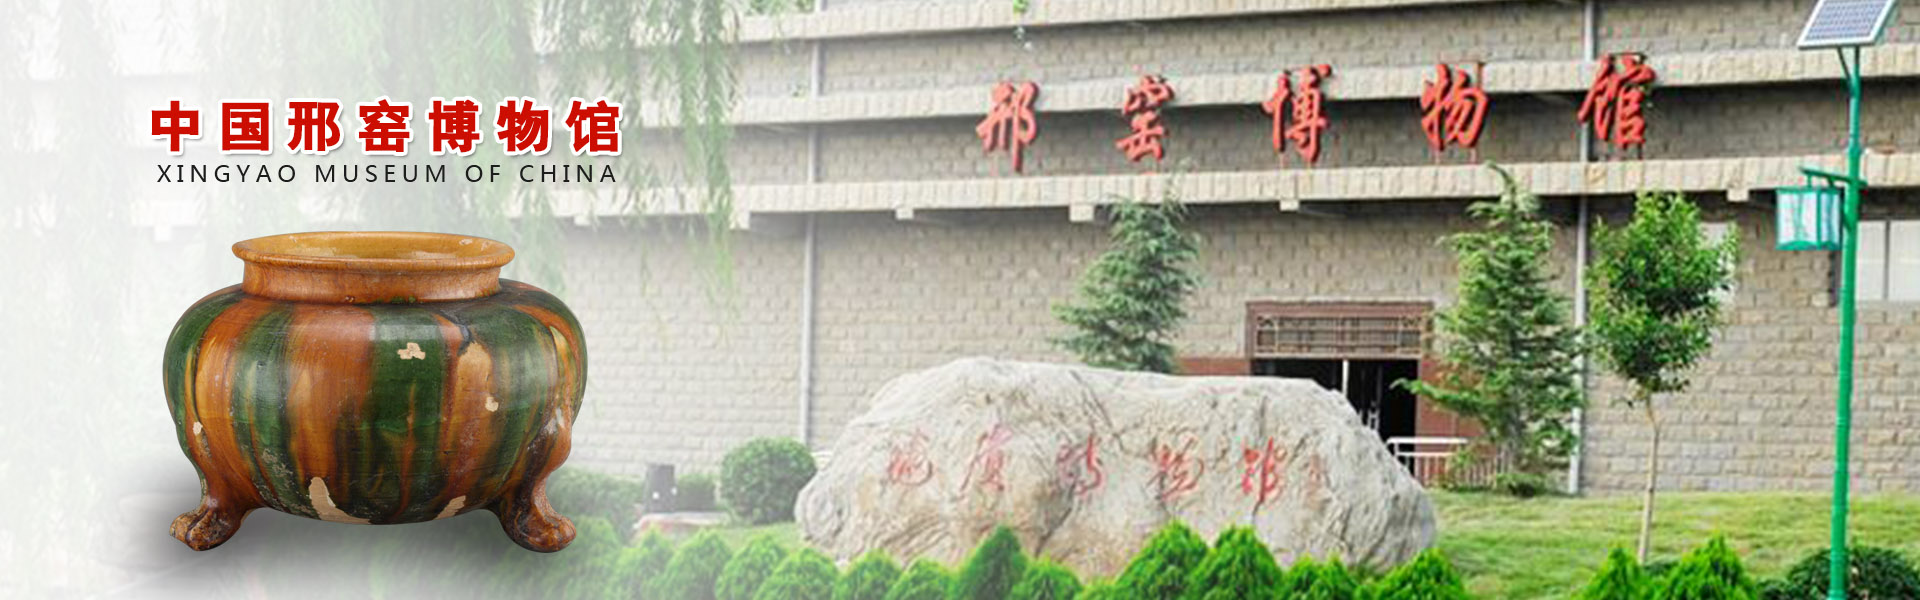 唐白釉褐彩盖罐|展品介绍-中国邢窑博物馆